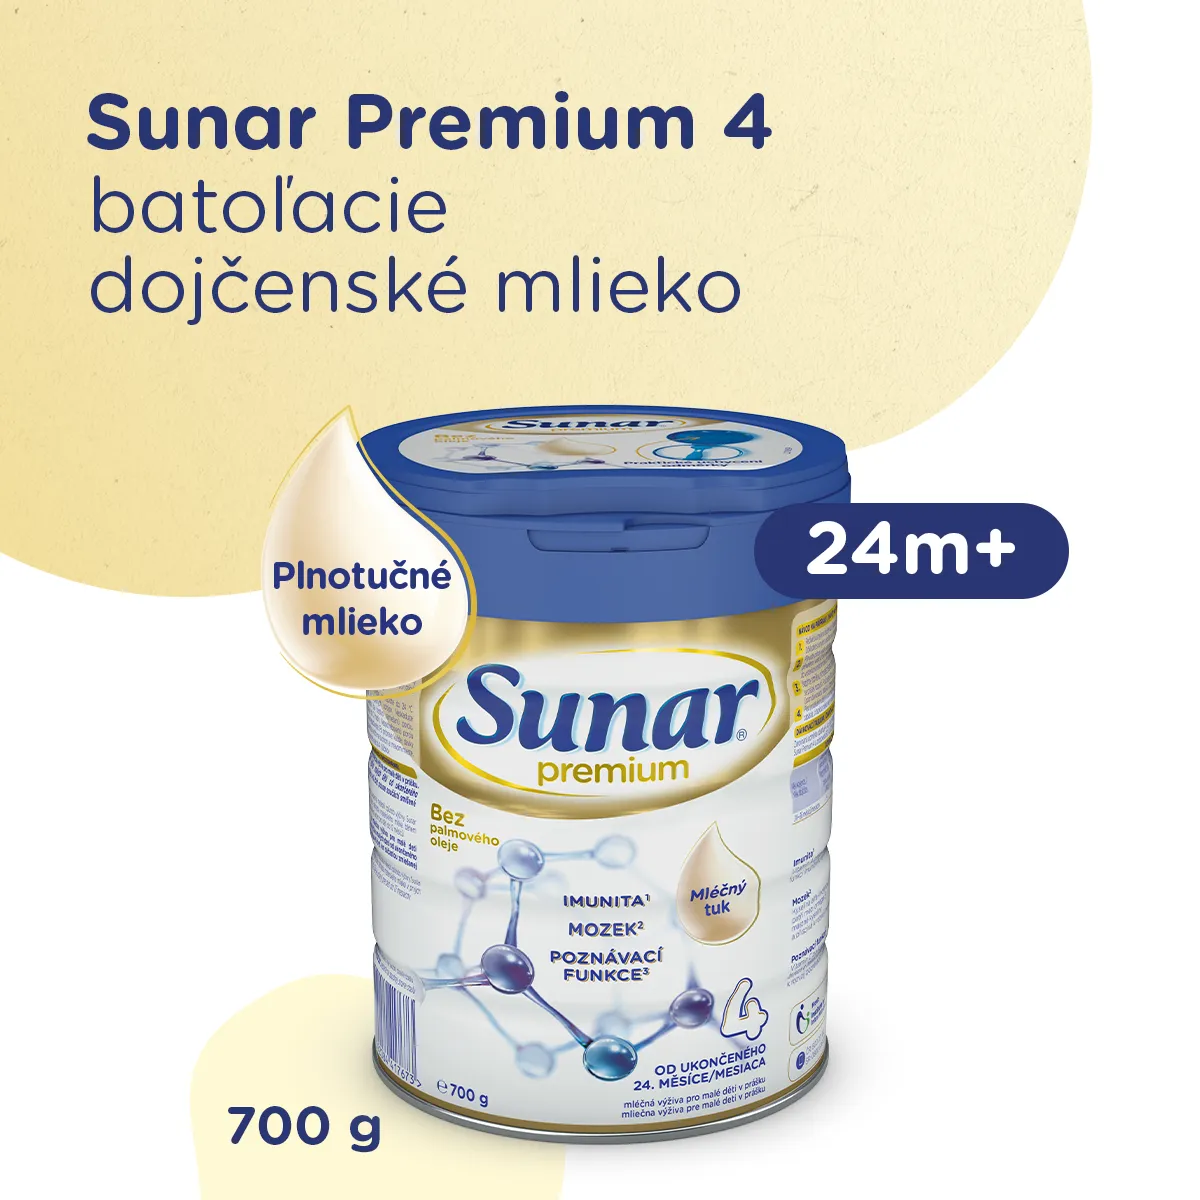 Sunar Premium 4 1×700 g, dojčenské mlieko, od 24. mesiaca